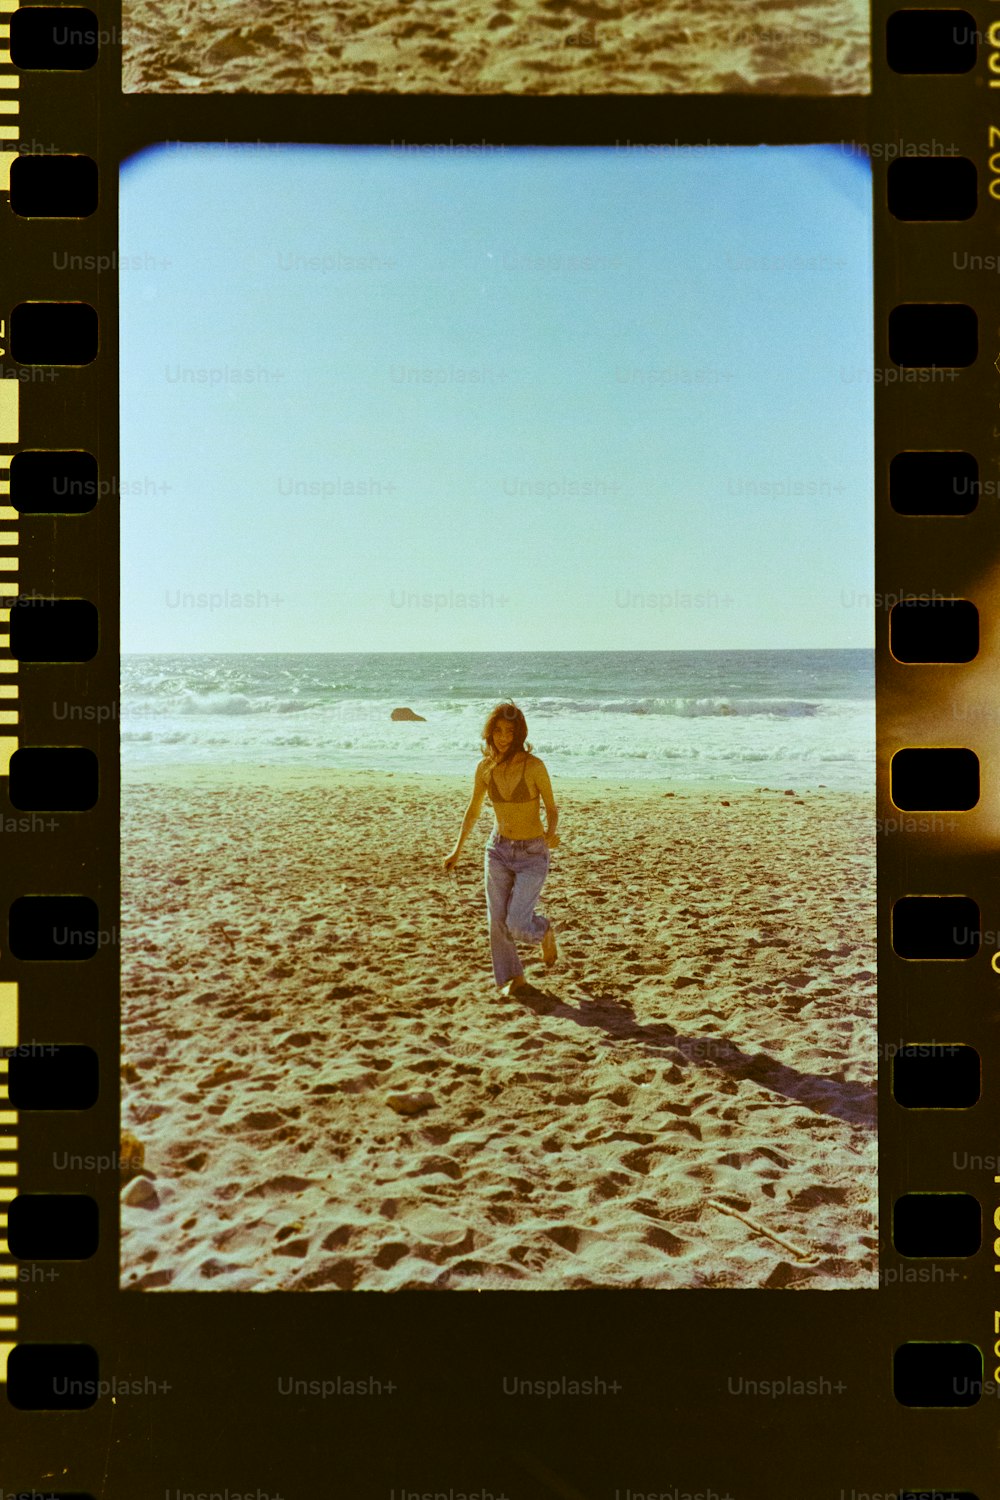 Ein Polaroid-Bild einer Frau, die am Strand spazieren geht